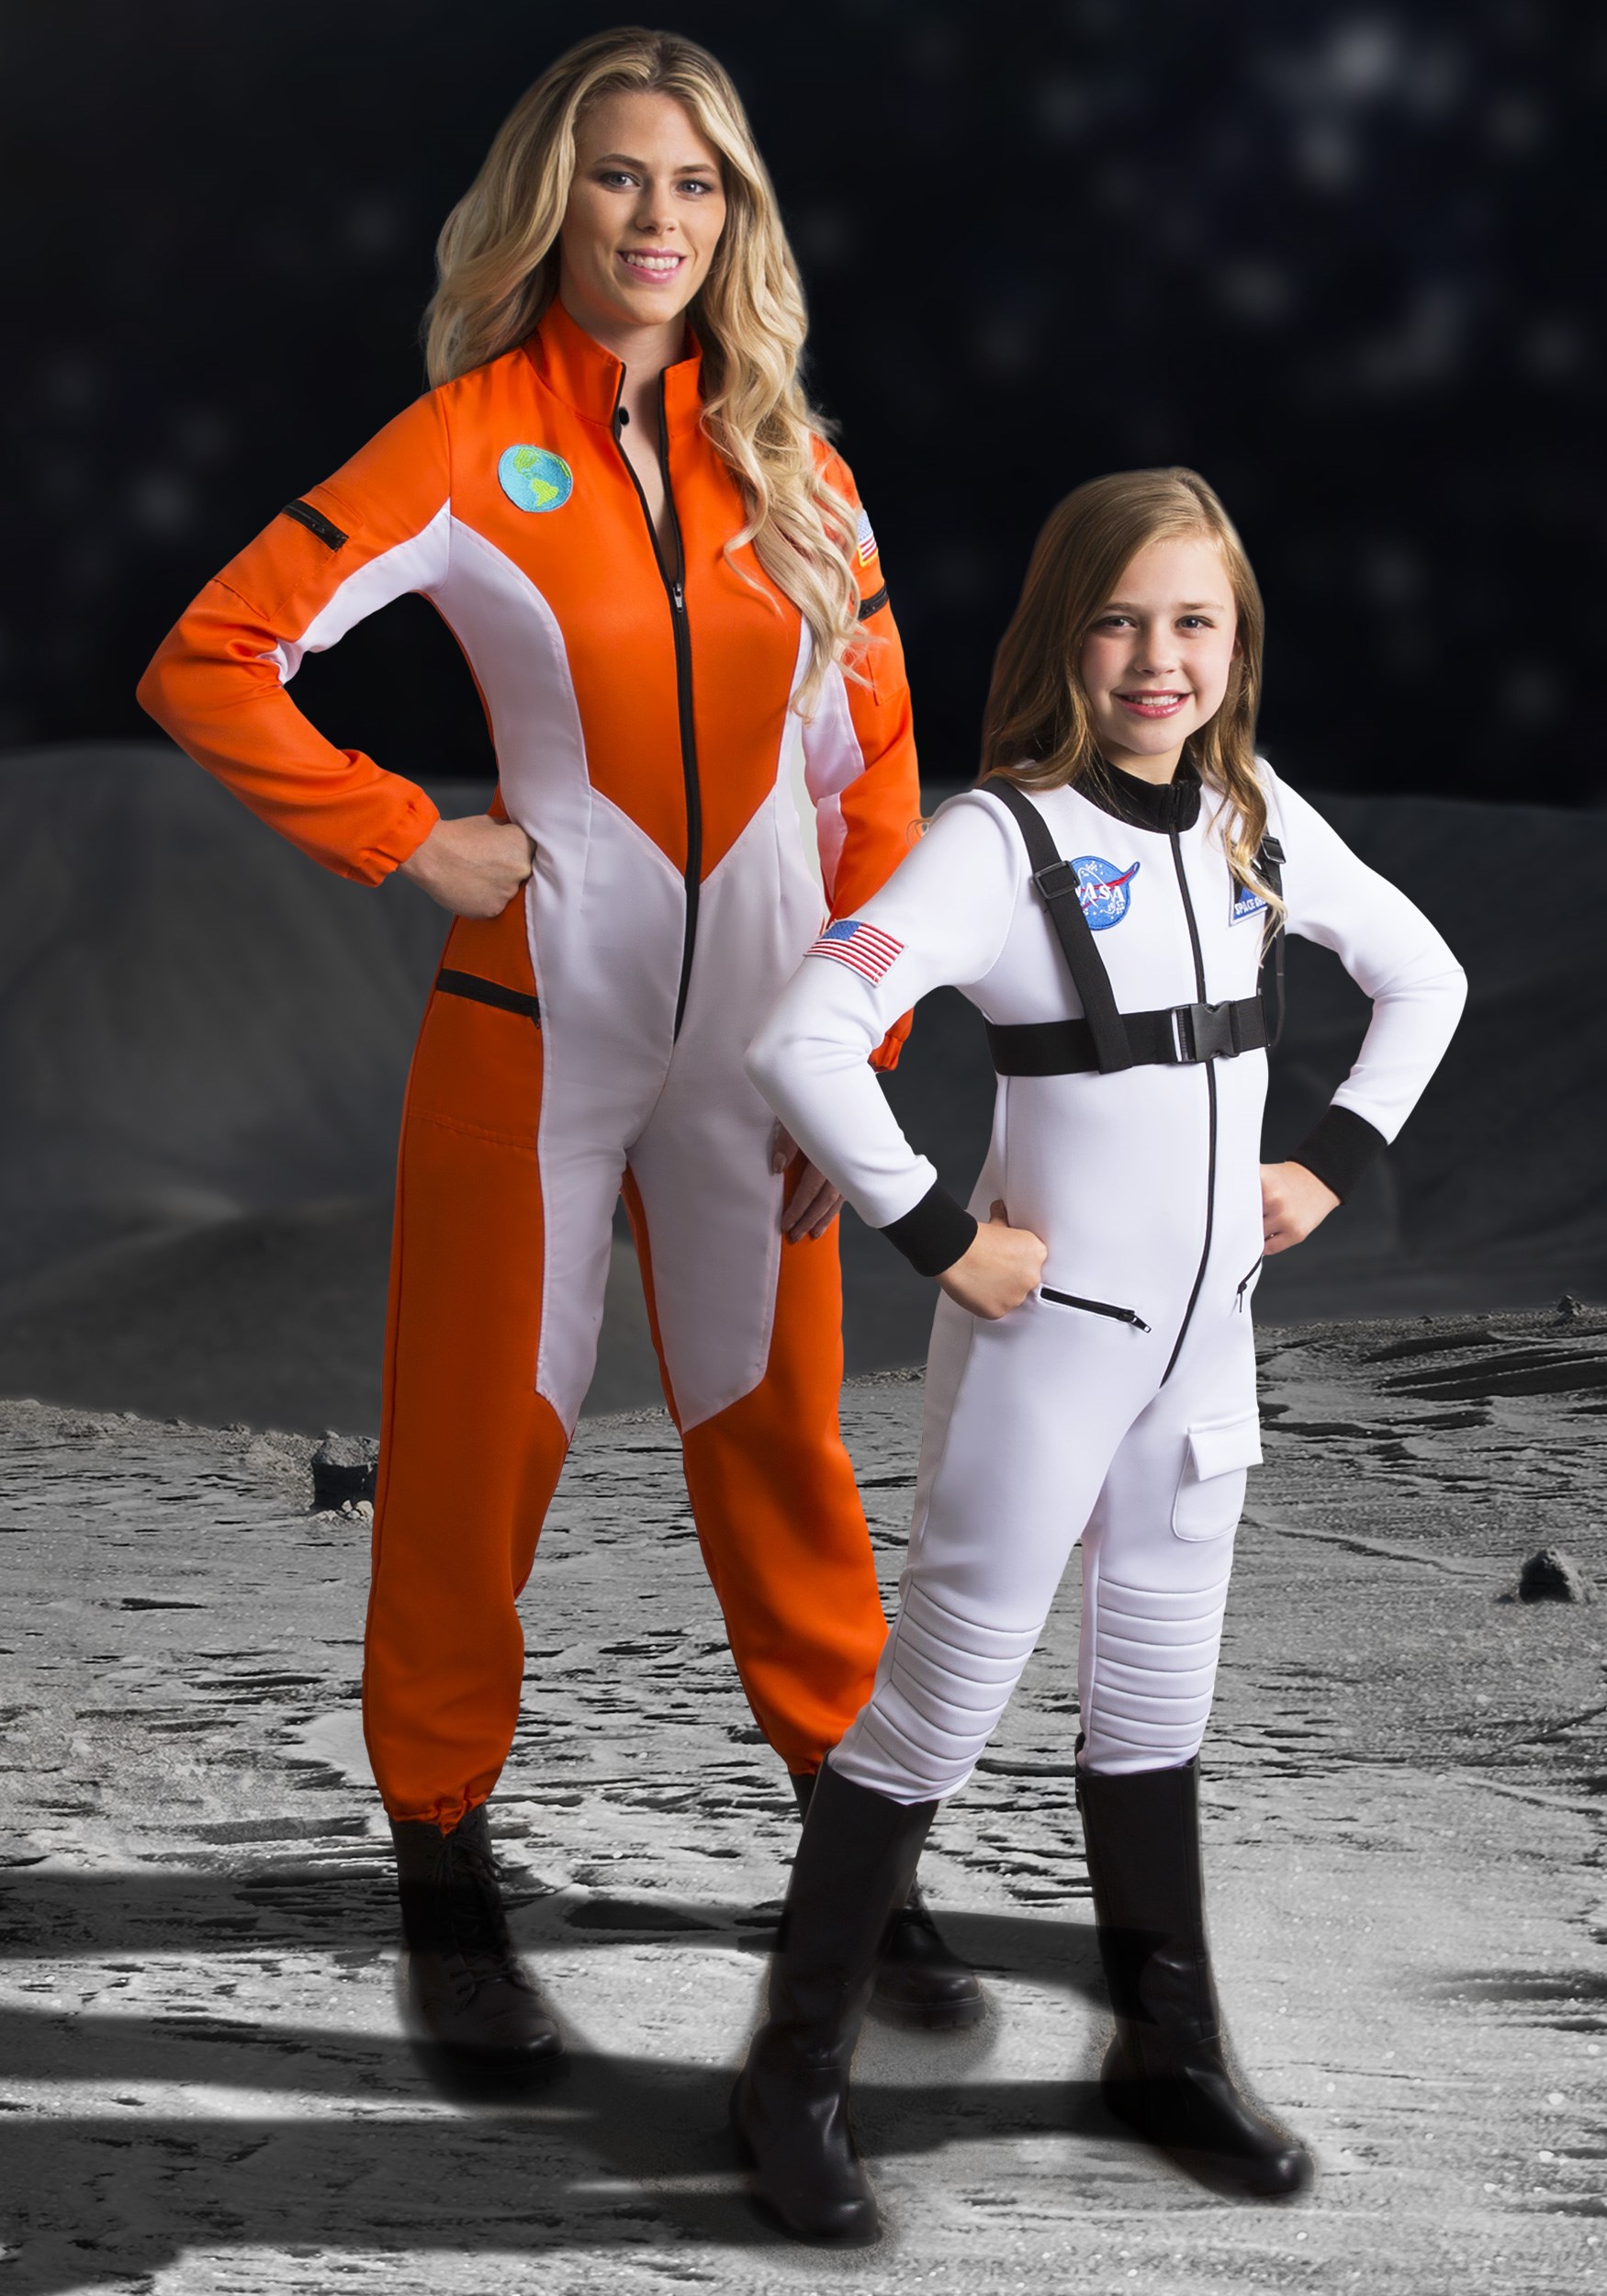 Girls White Astronaut Costume